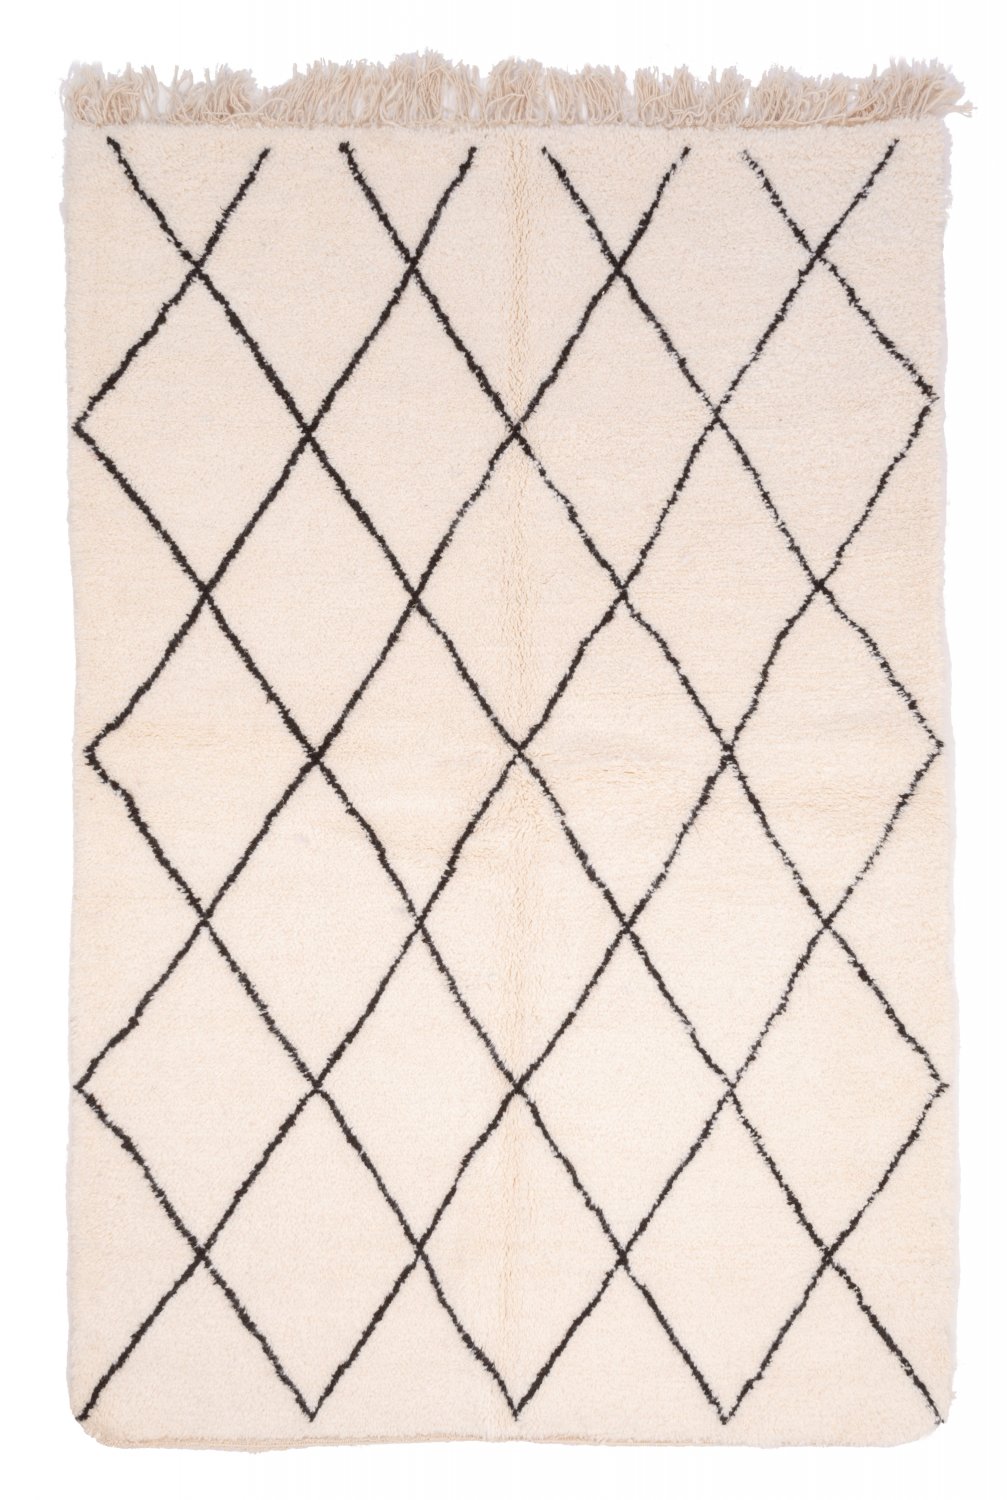 Marokkolainen Kilim matto Beni Ouarain 250 x 165 cm